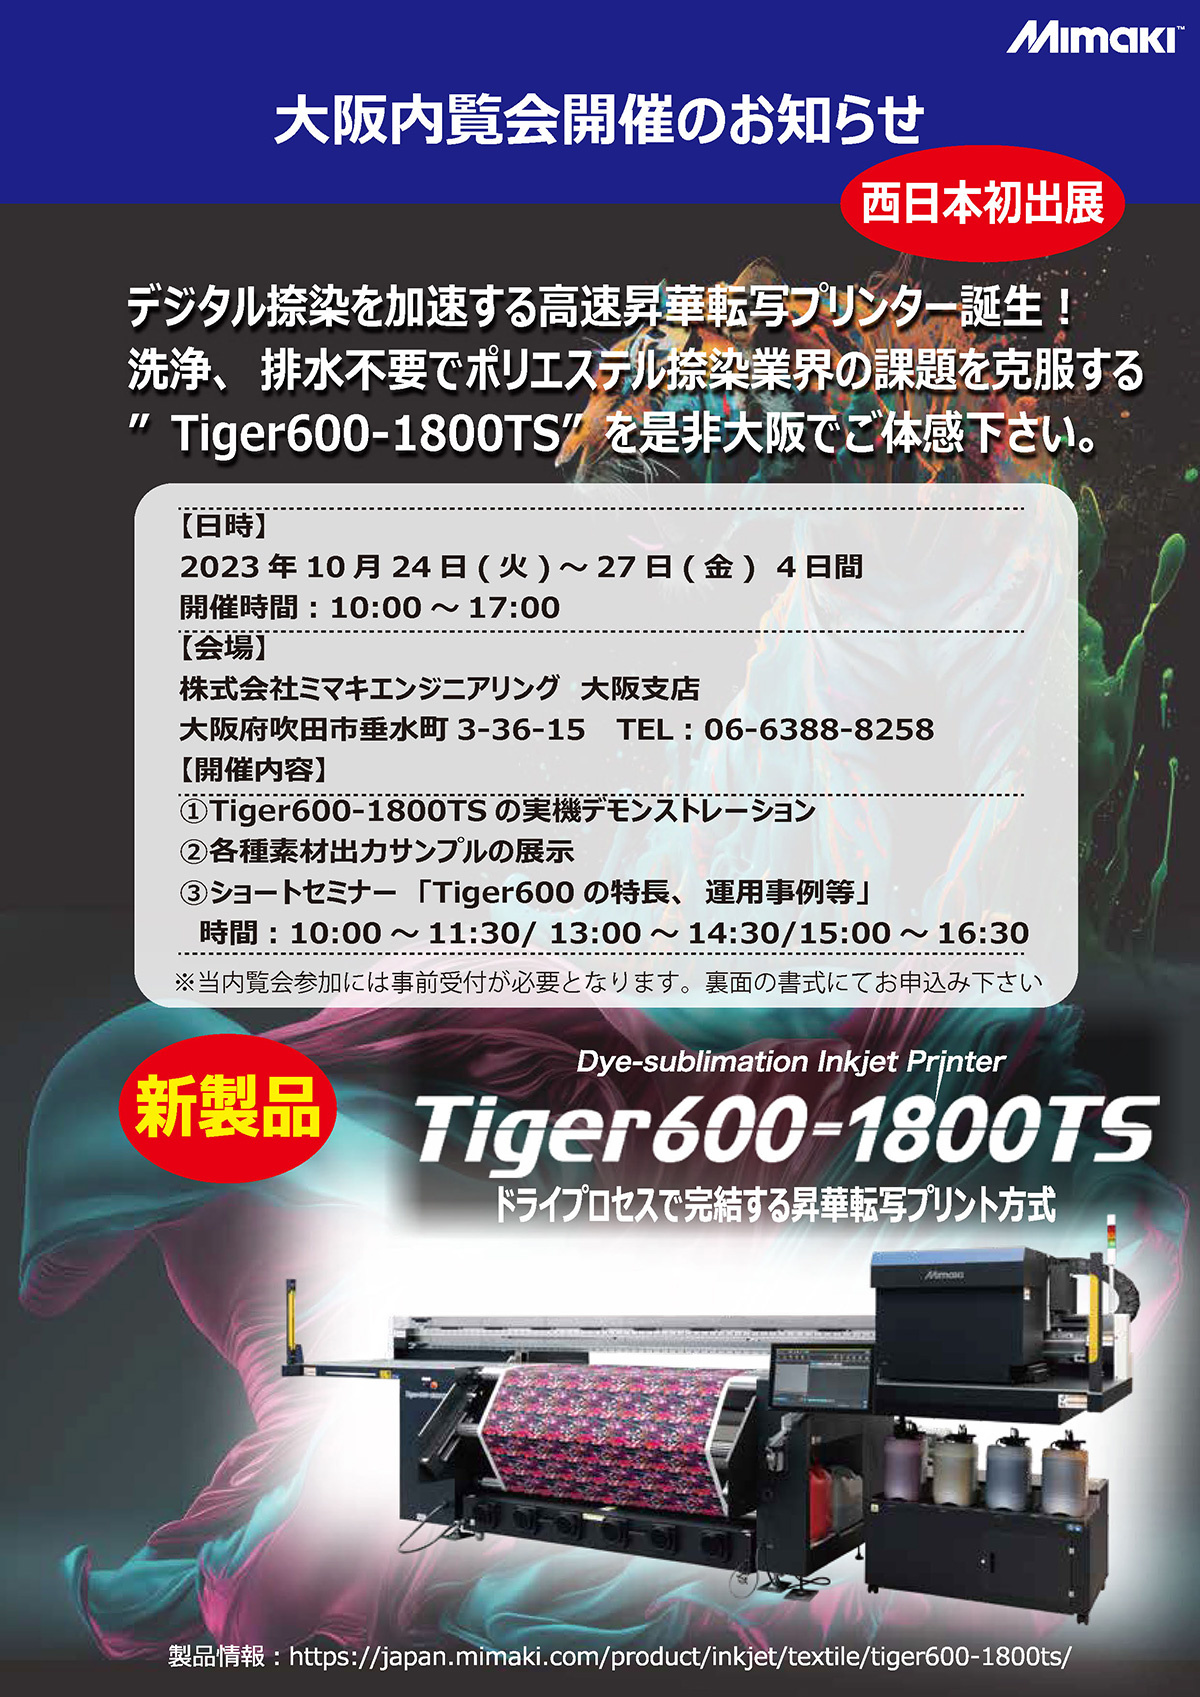 「Tiger600大阪内覧会」開催のご案内（10/24～27：ミマキエンジニアリング大阪支店）